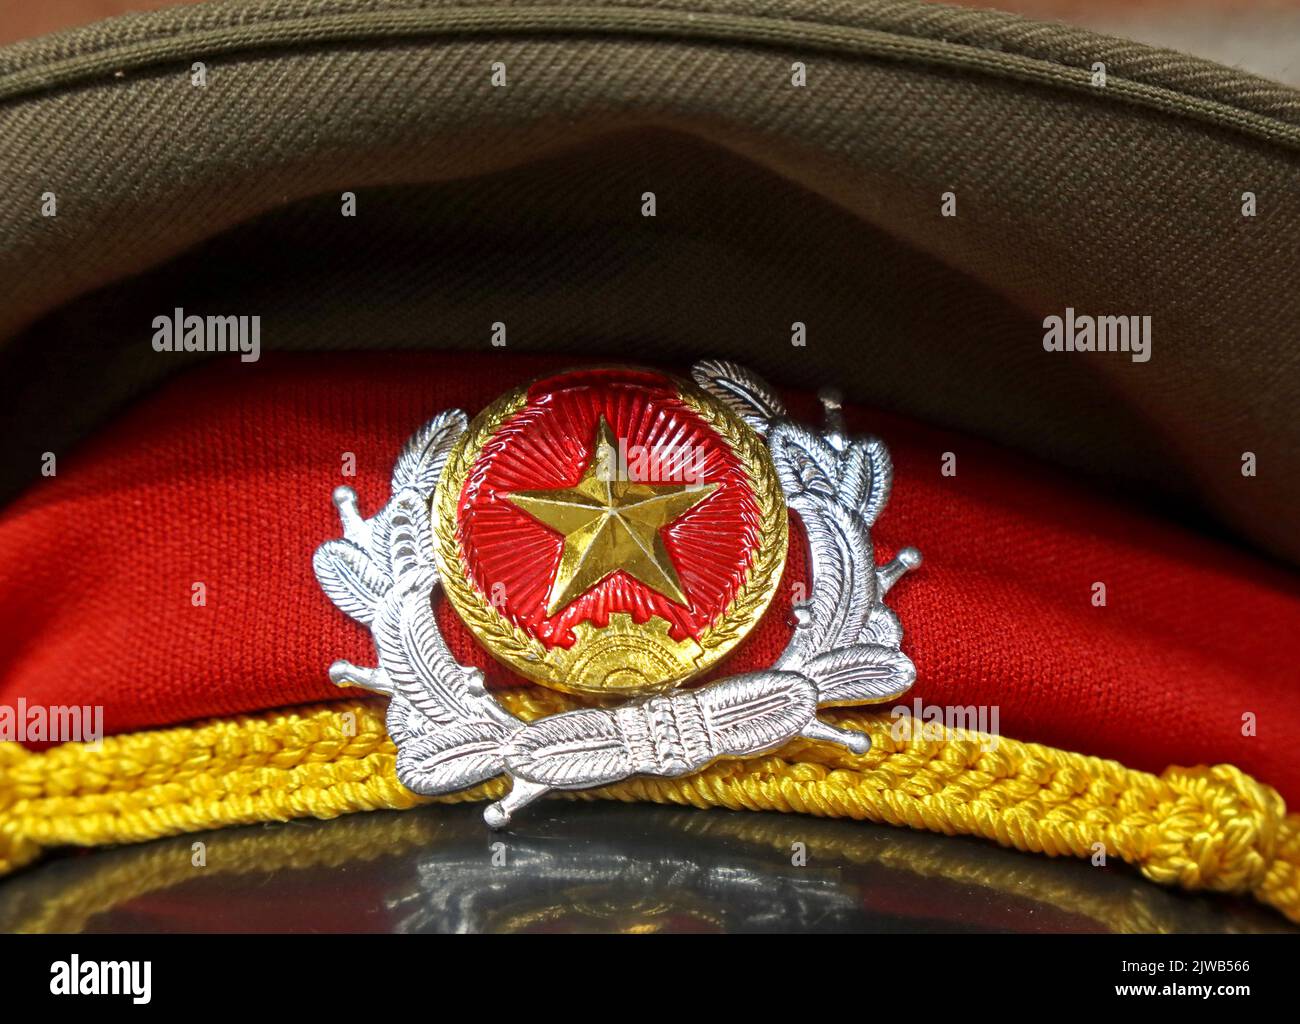 URSS soviétique étoile d'or du CCCP sur une casquette militaire, la casquette militaire russe, invasion de l'Ukraine - l'opération militaire spéciale de Vladimir Poutine Banque D'Images